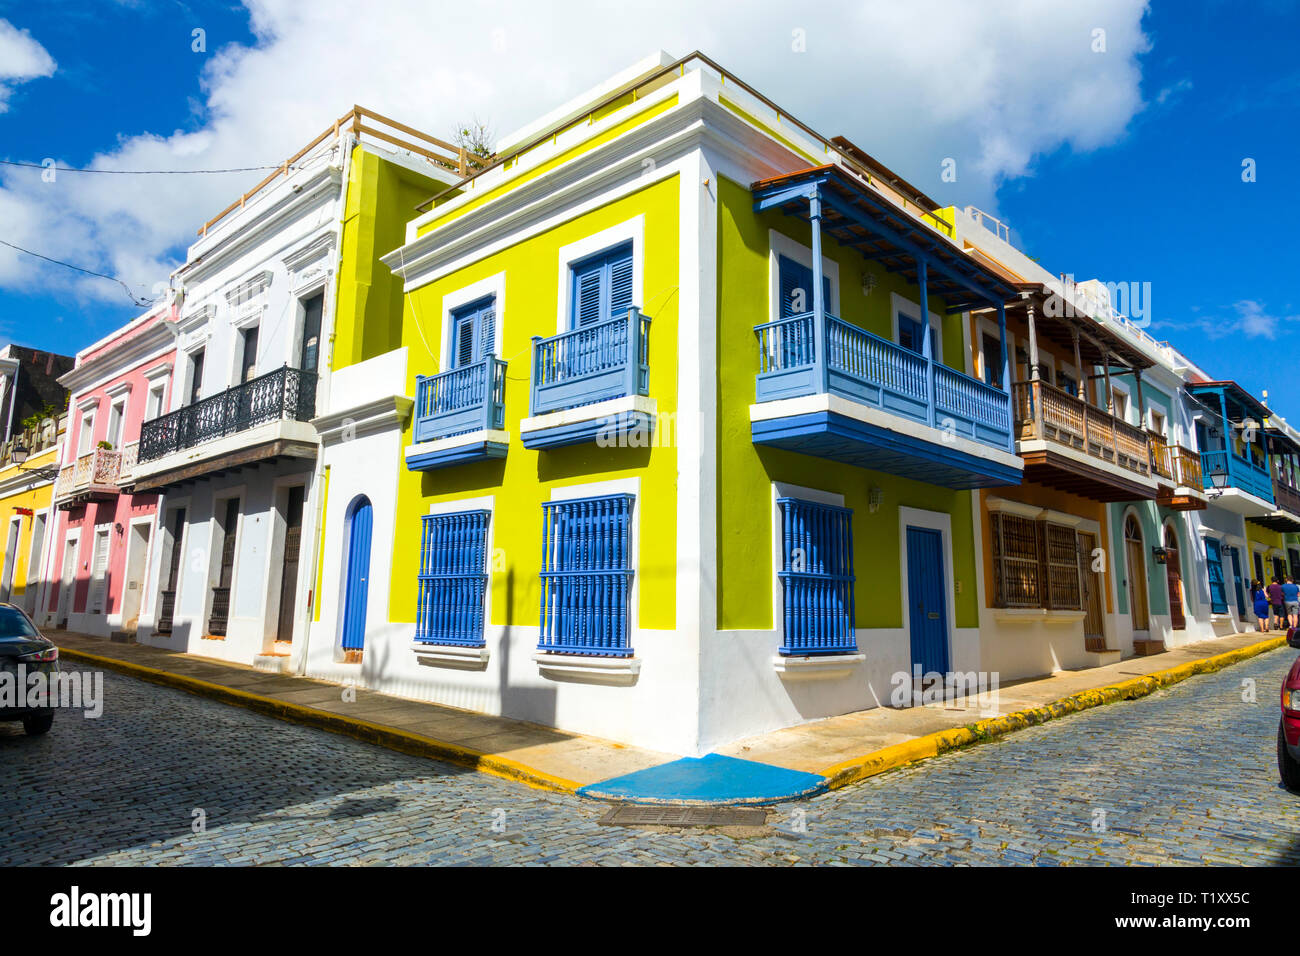 San Juan, Puerto Rico, la capital y la ciudad más grande, se asienta en la  costa atlántica de la isla. Su amplia playa frentes la Isla Verde resort de  Gaza, conocido por